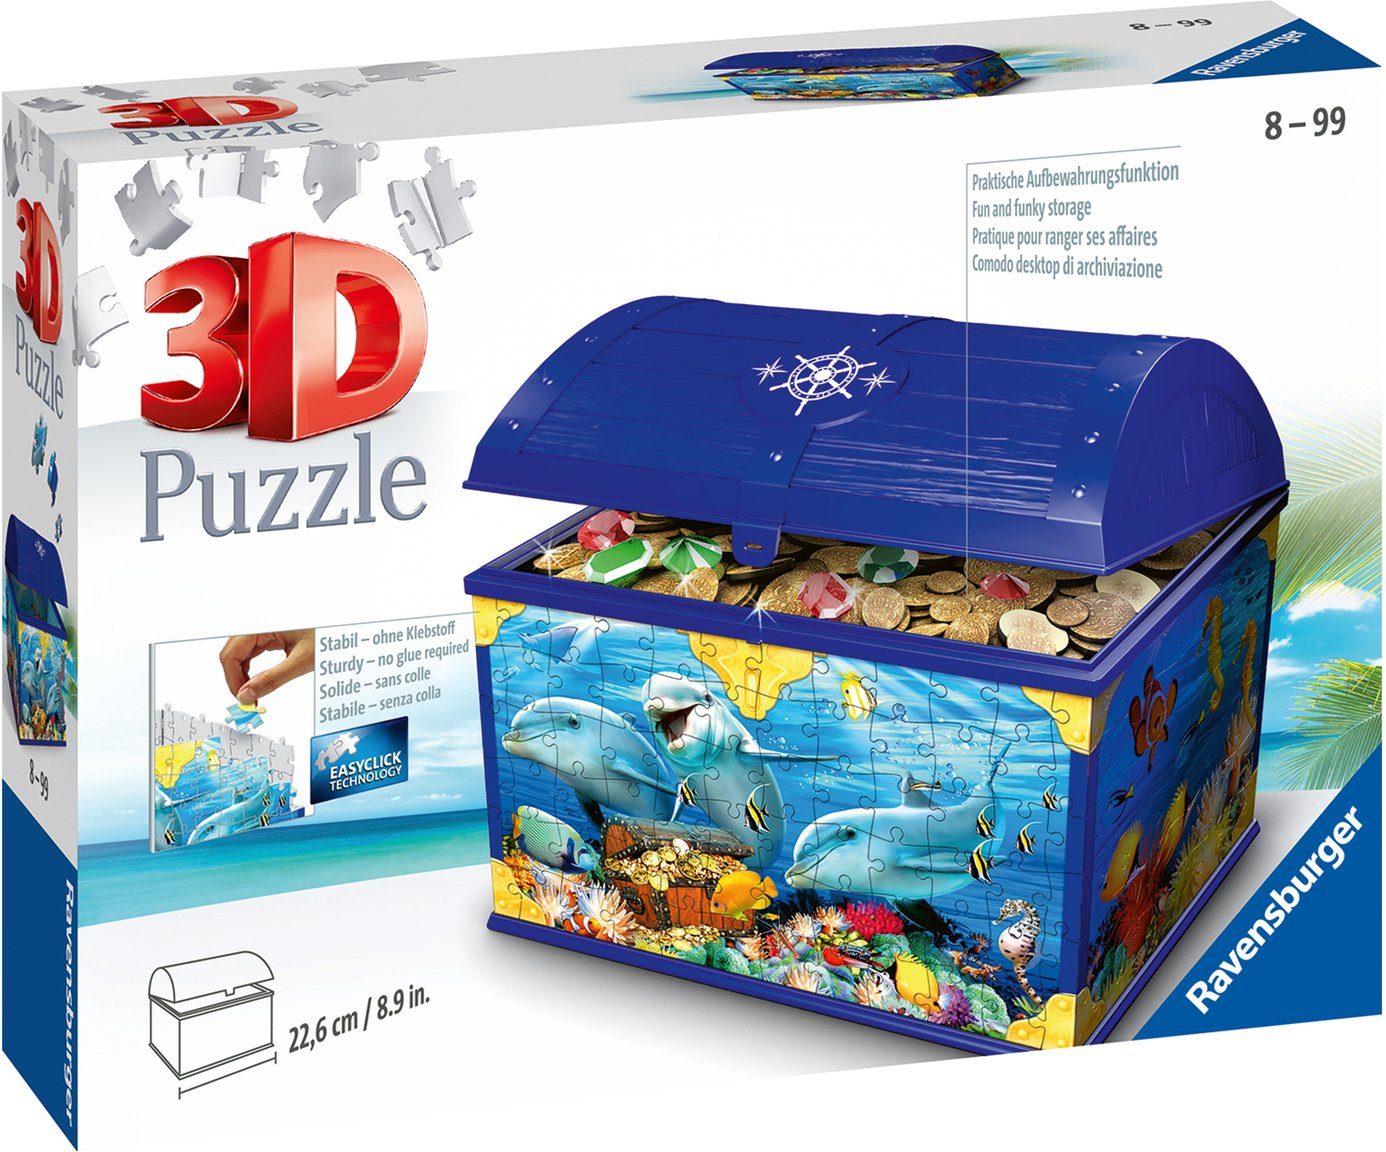 Image of Ravensburger 3D Puzzle - Schatztruhe "Unterwasserwelt", 223 Teile, mehrfarbig